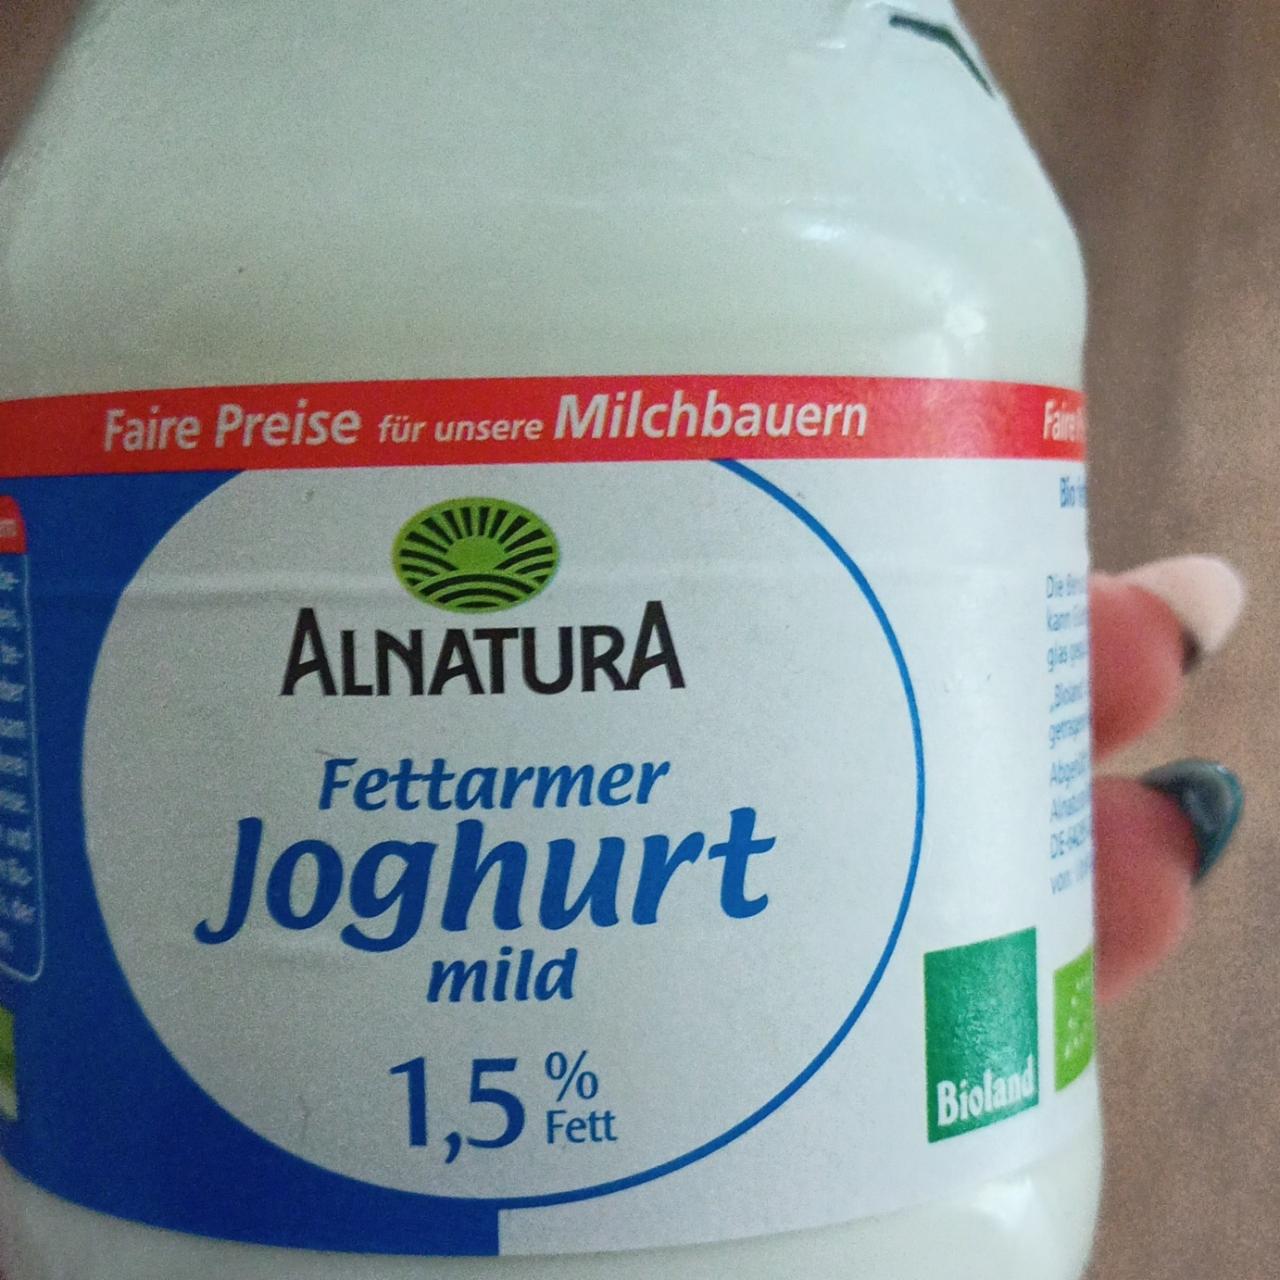 Fotografie - Fettarmer Joghurt mild 1,5 % fett Alnatura